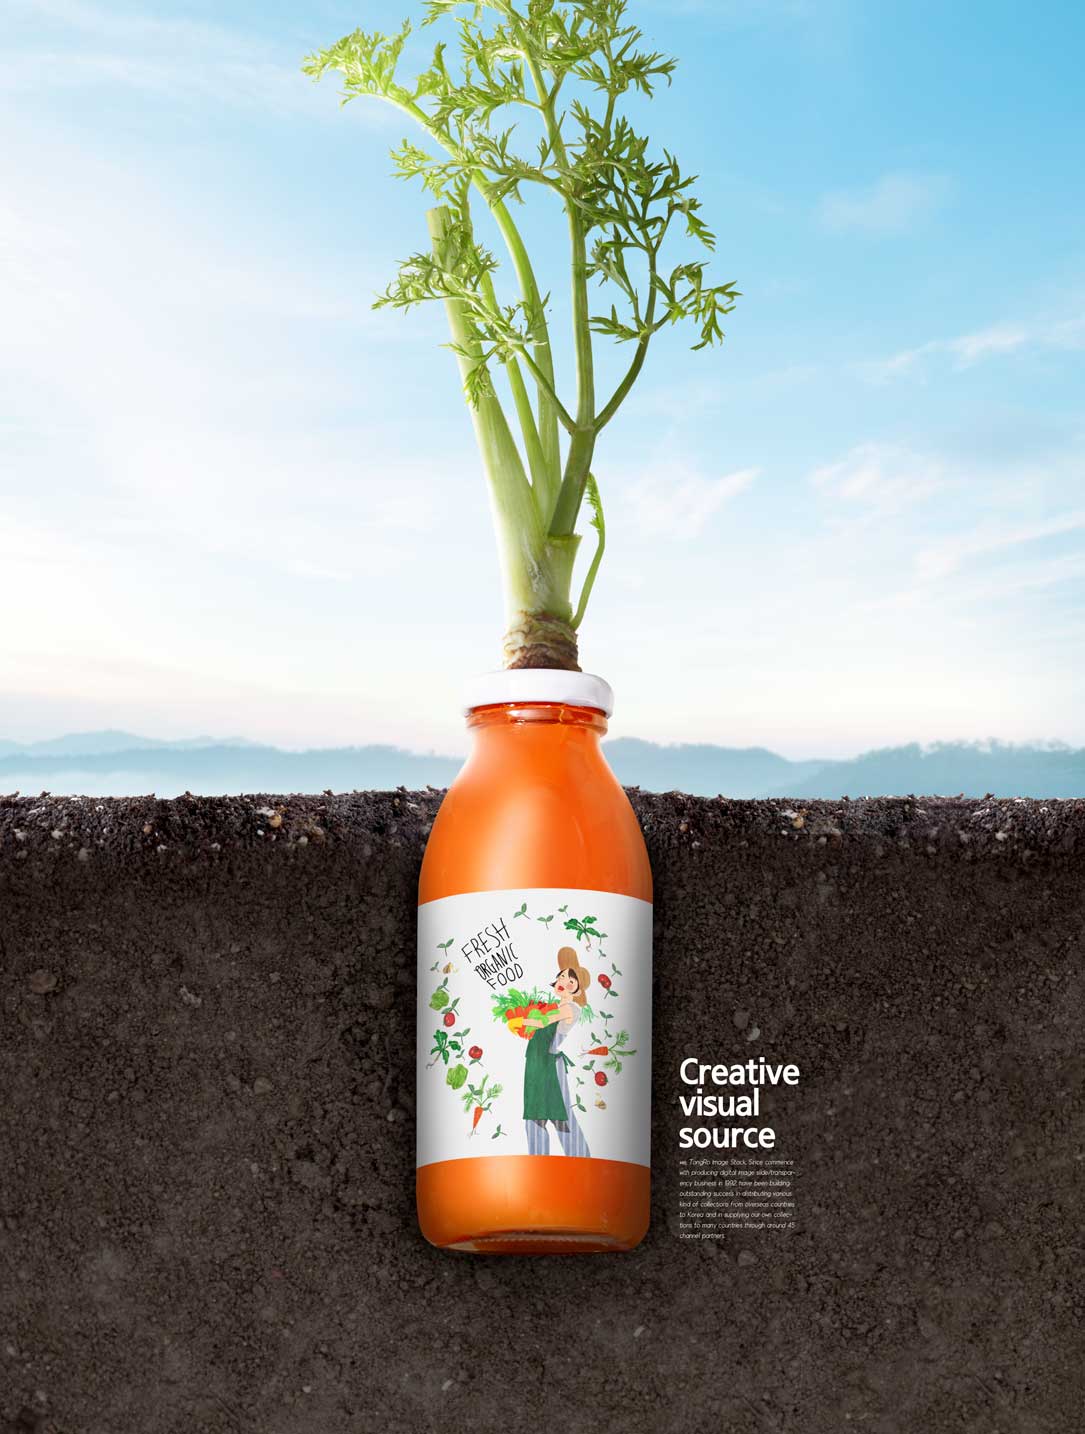 营养萝卜汁创意视觉海报设计模板素材